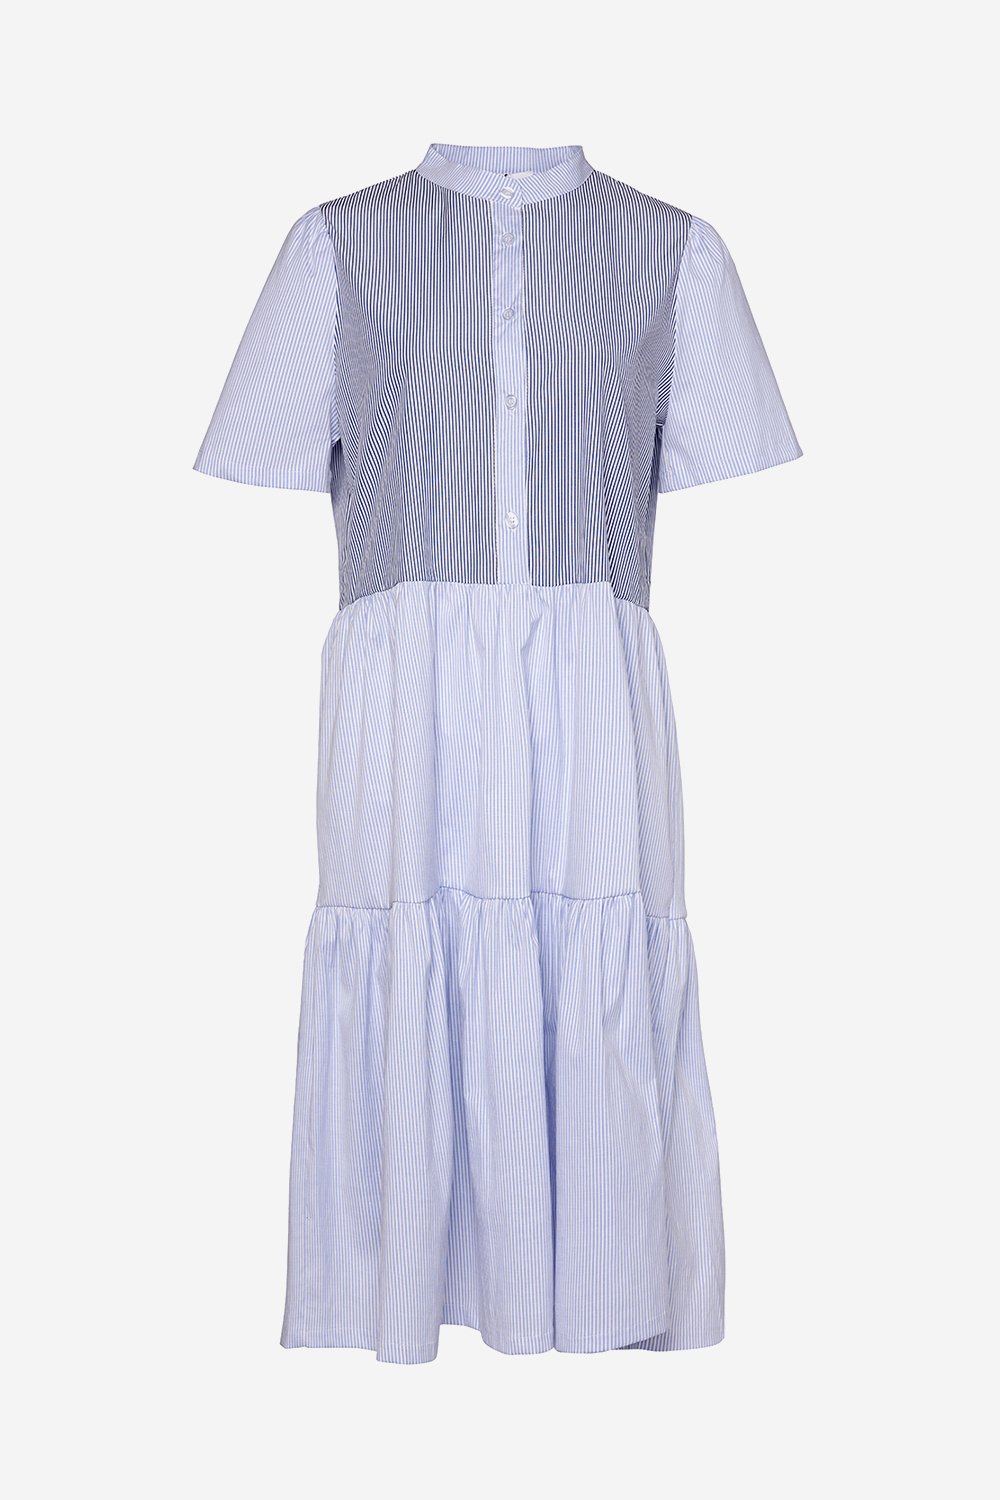 Lipe Dress Cotton Poplin Navy/blue Stripe